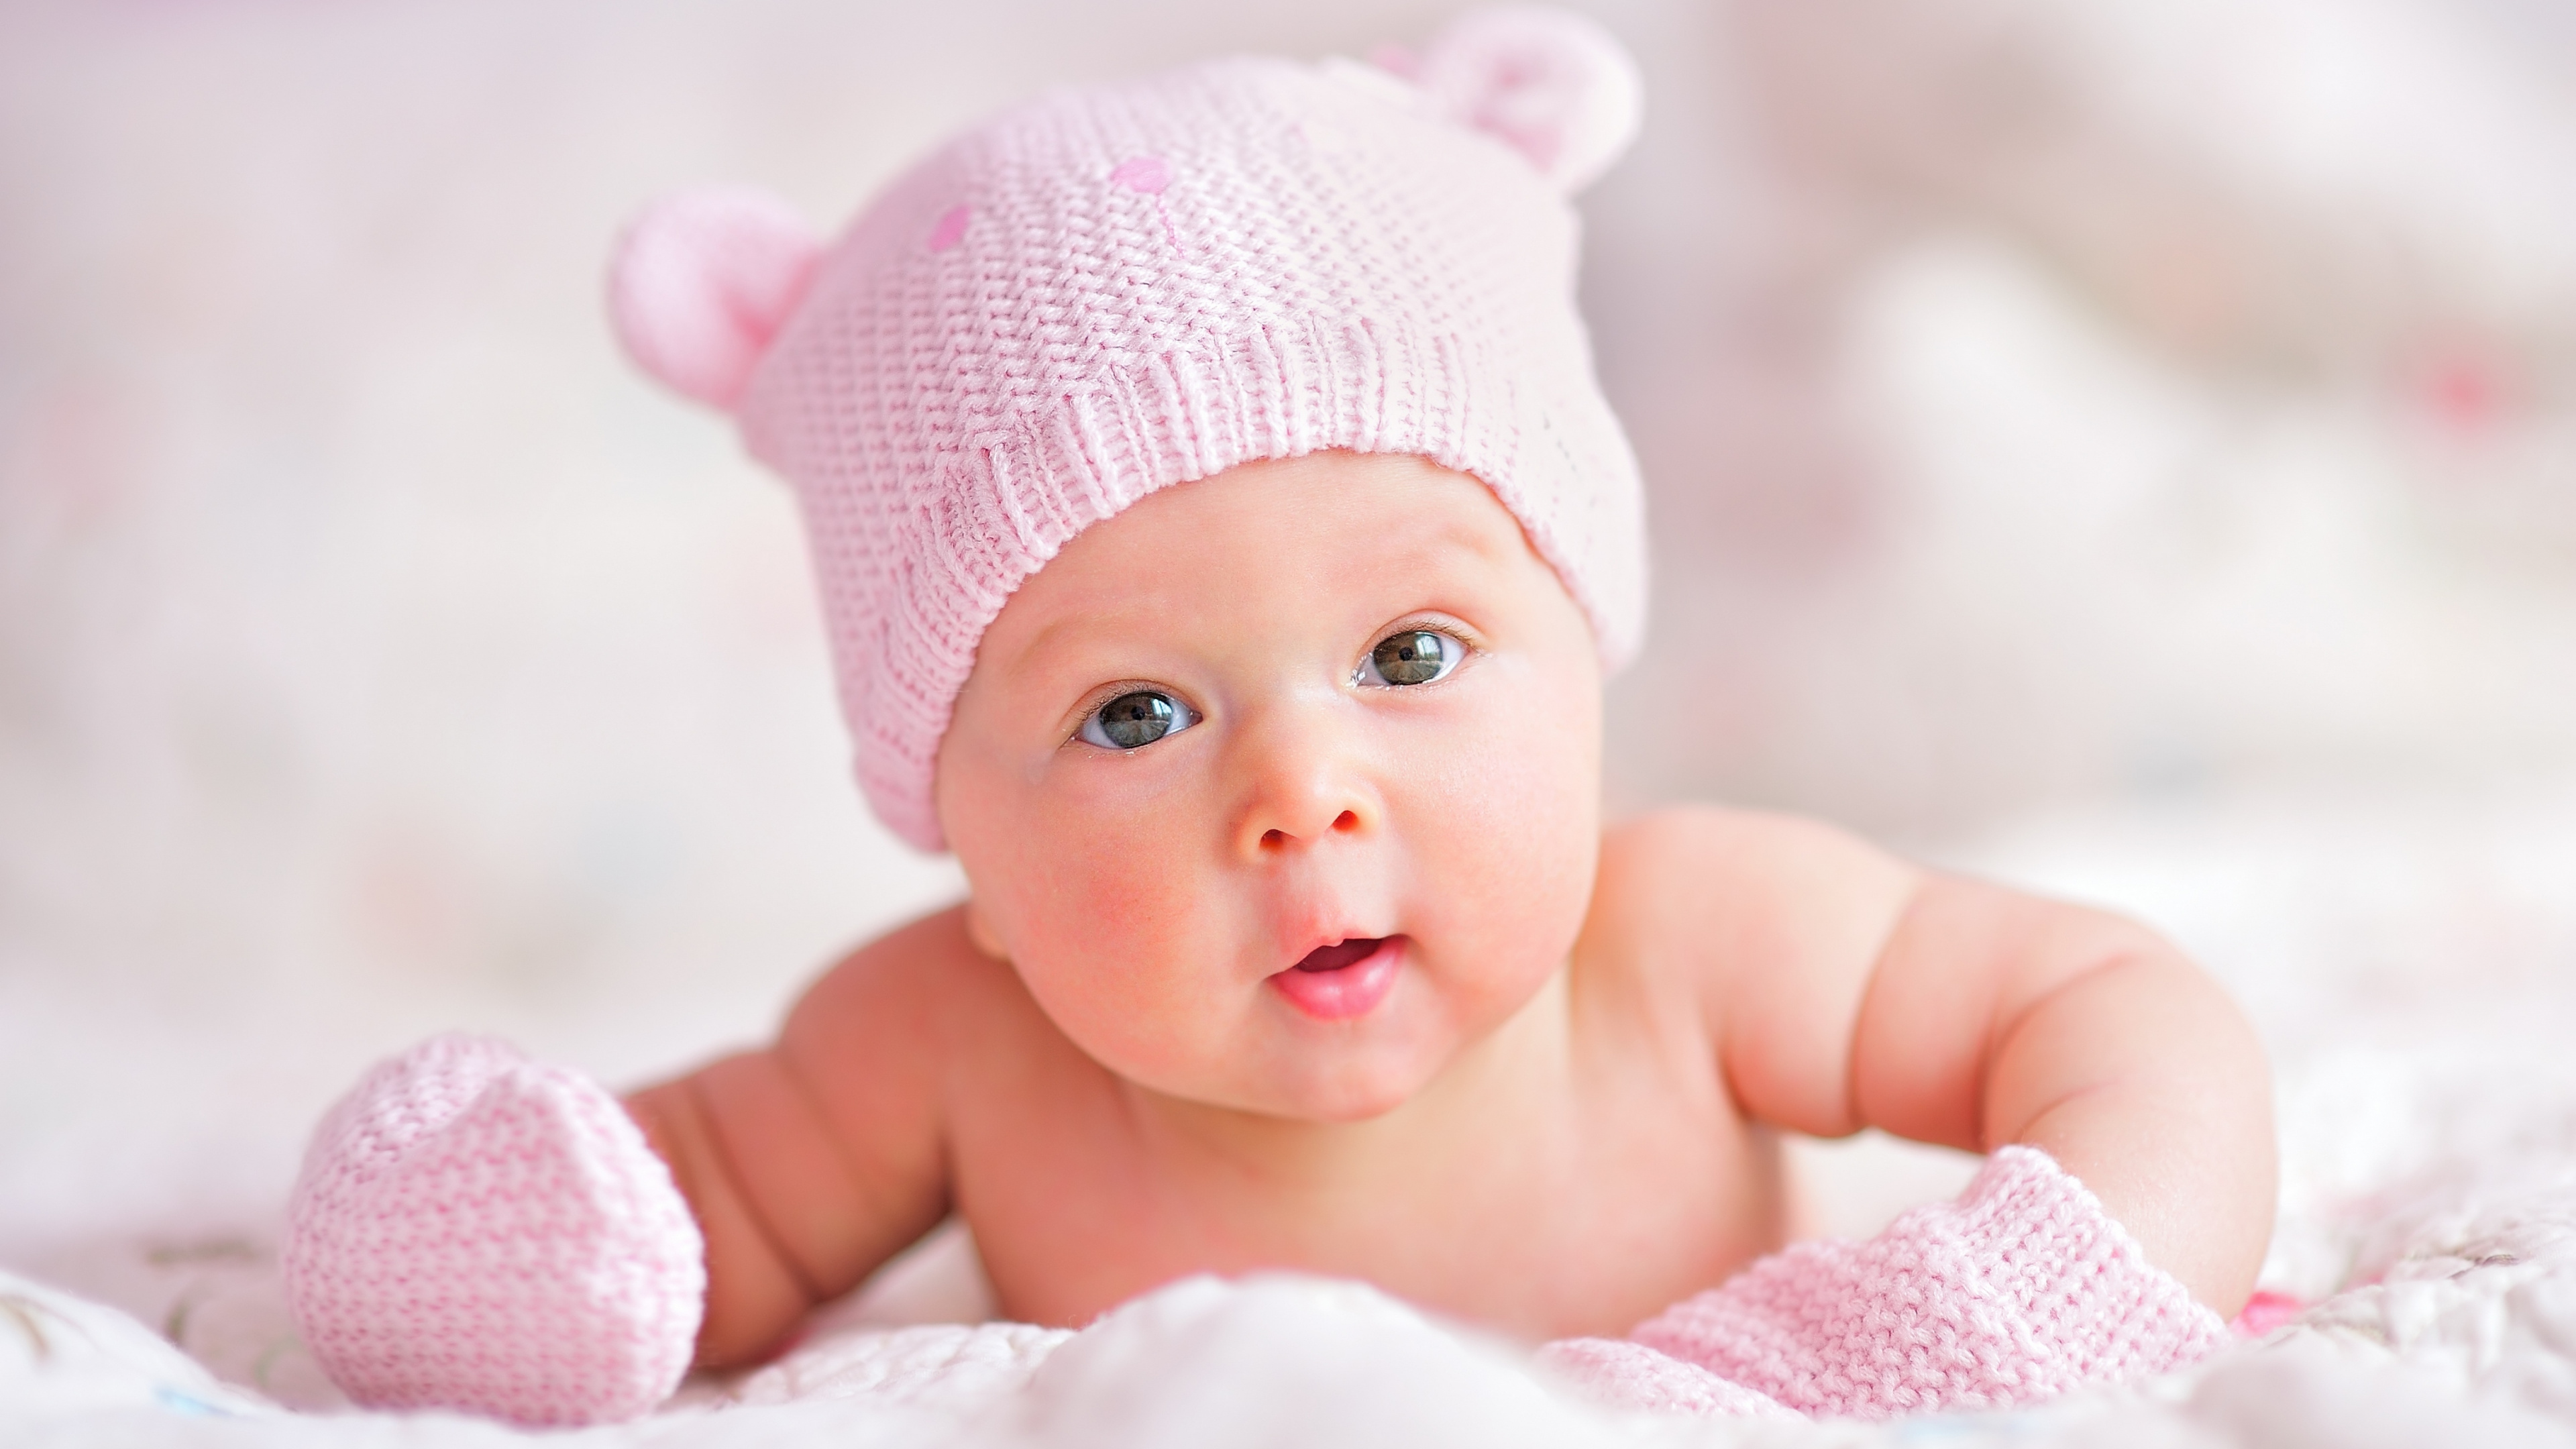 婴儿, 儿童, 粉红色, 皮肤, 女孩 壁纸 3840x2160 允许